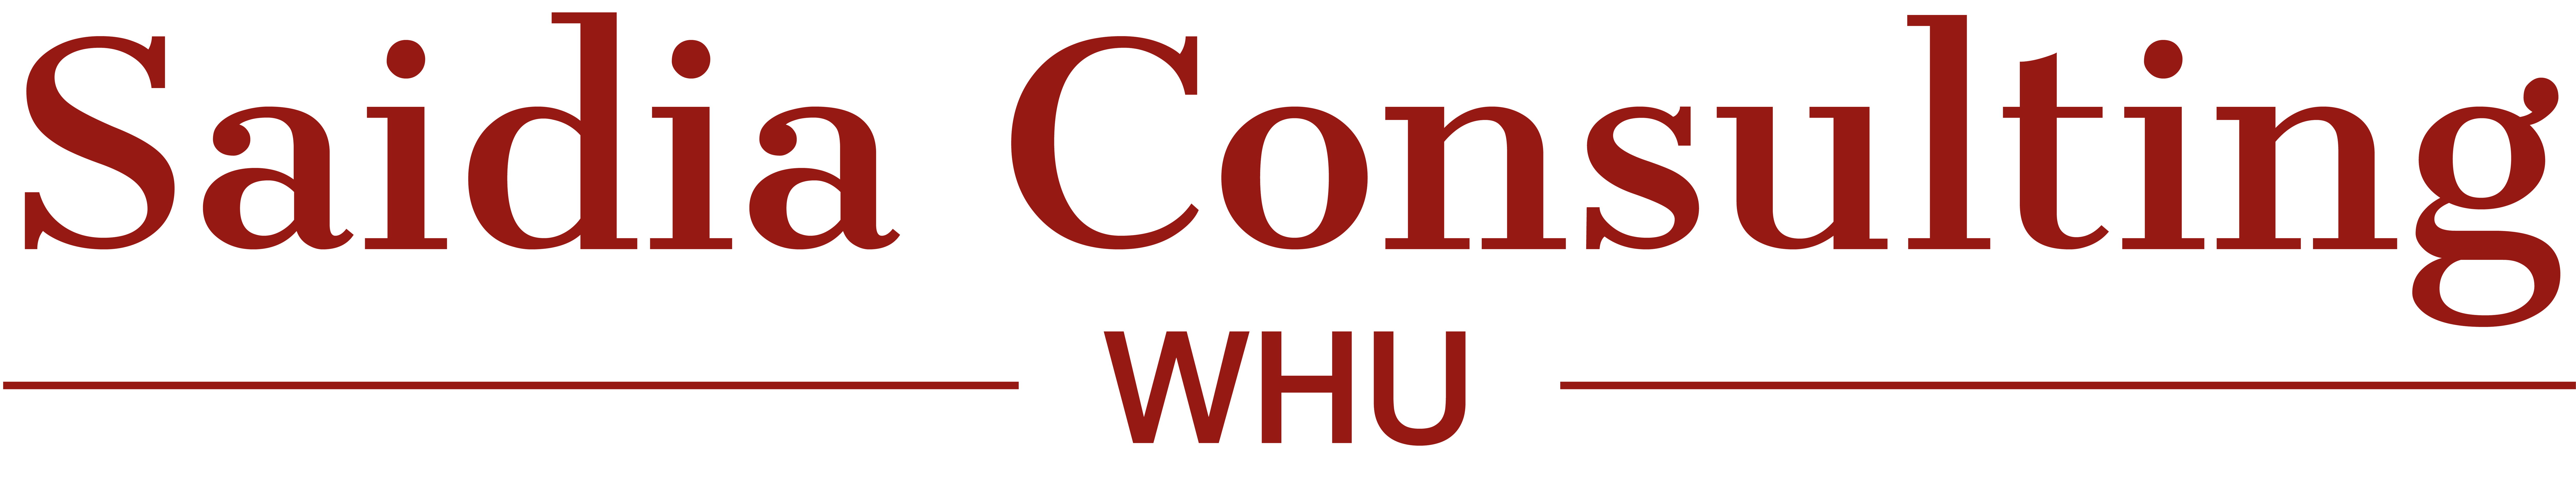 Logo Saidia Consulting WHU